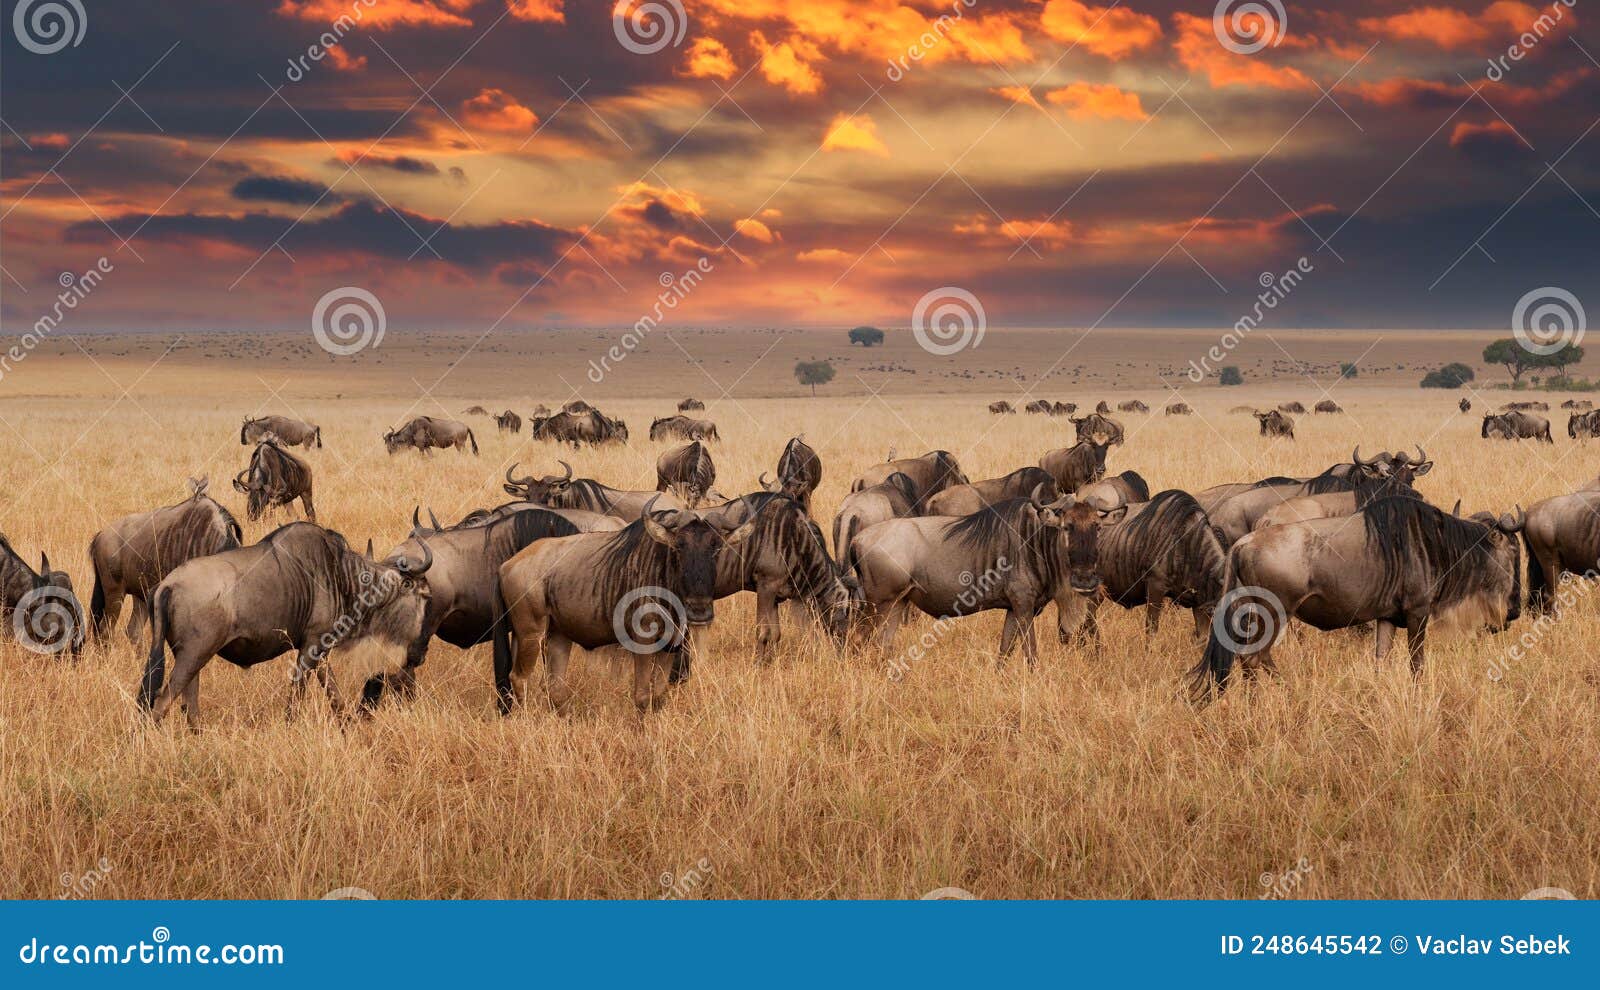 wildebeest migration, serengeti national park